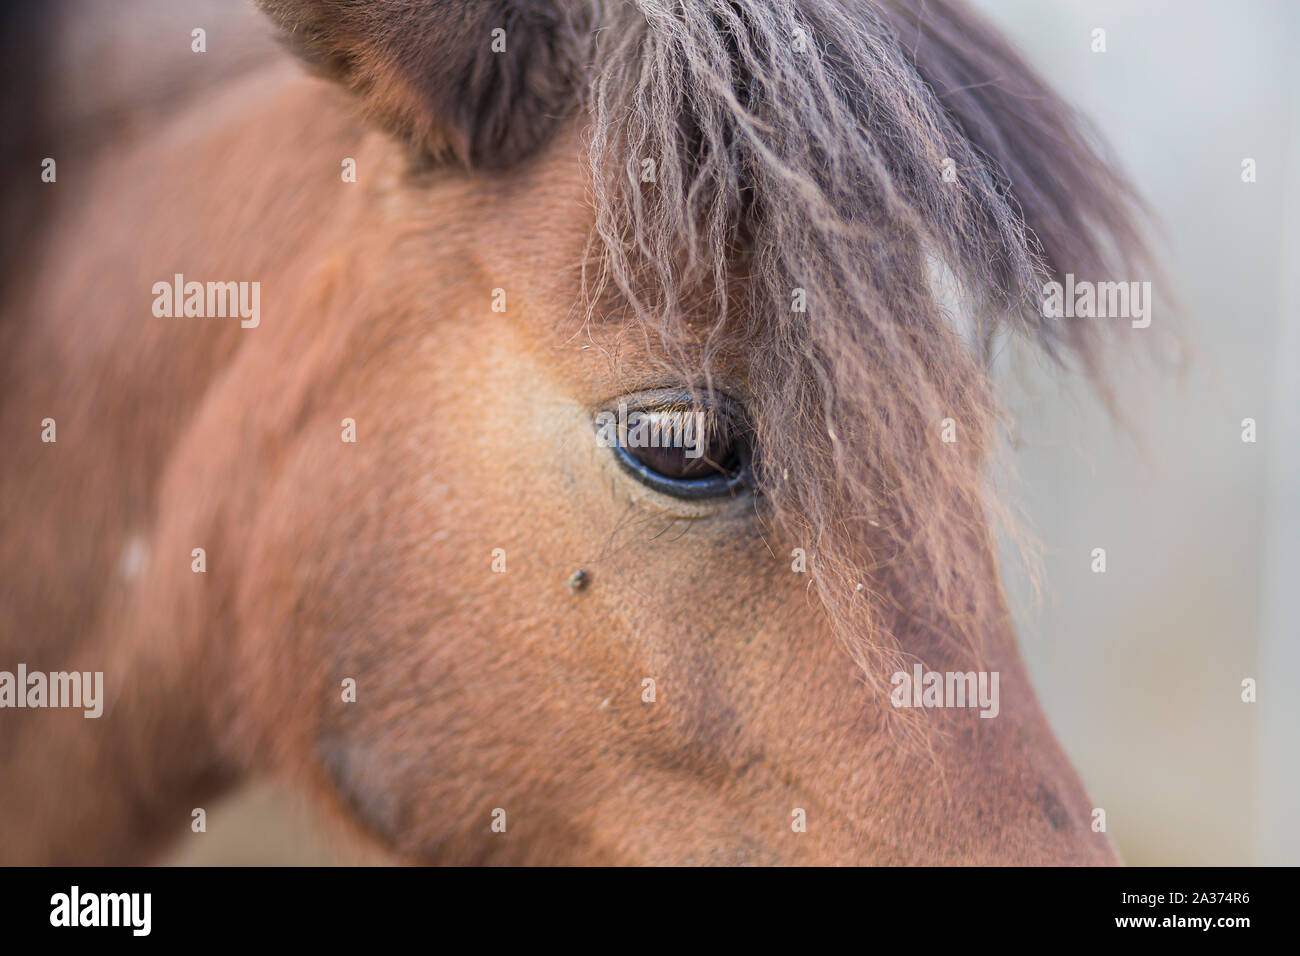 Cute brown horse close up portrait de l'œil et de la tête Banque D'Images